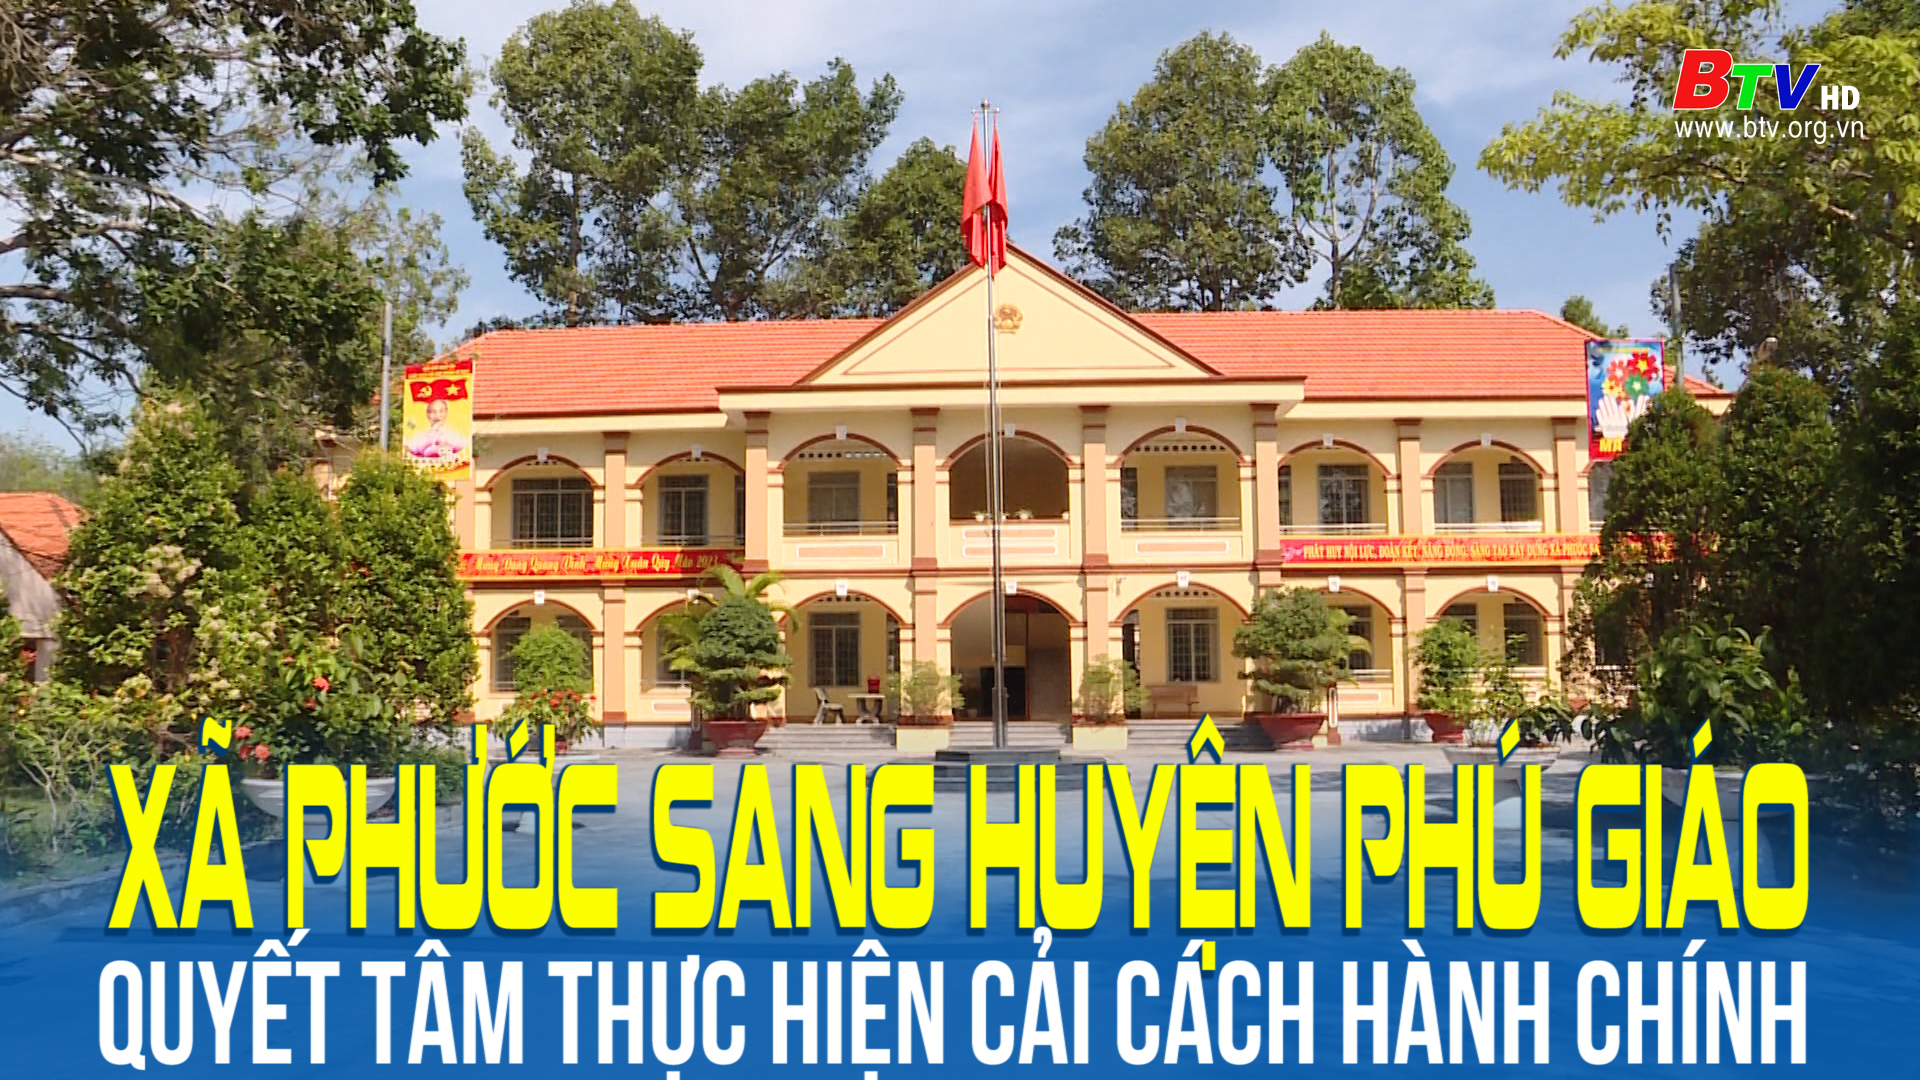 Xã Phước Sang huyện Phú Giáo quyết tâm thực hiện cải cách hành chính